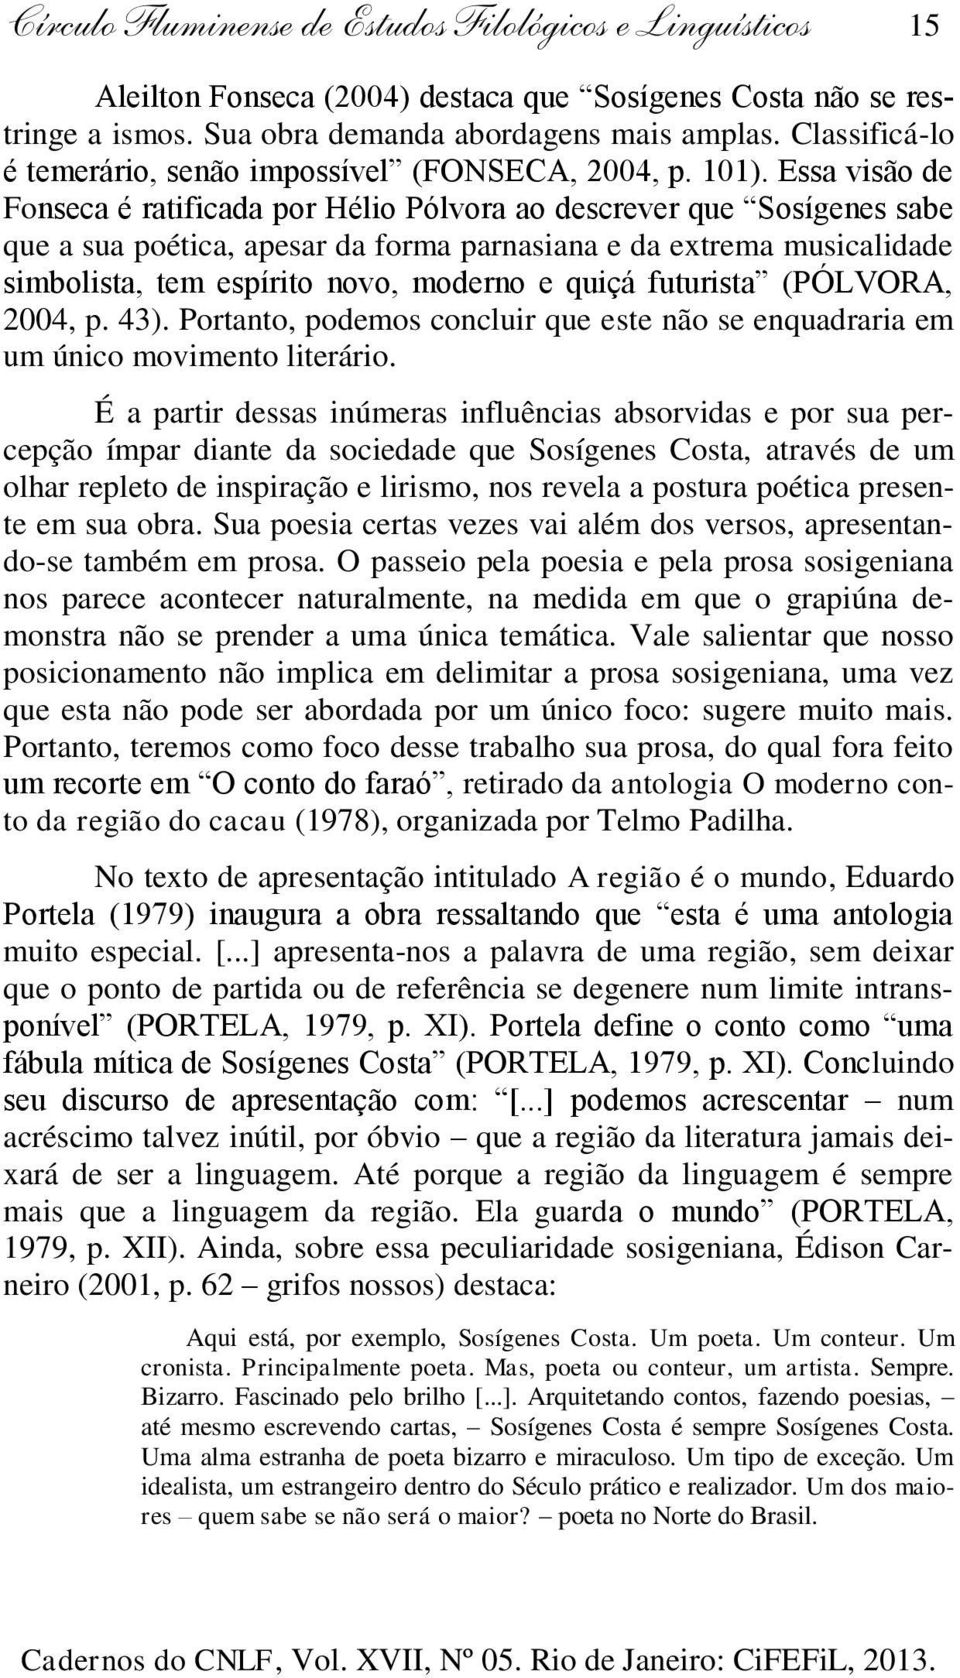 Essa visão de Fonseca é ratificada por Hélio Pólvora ao descrever que Sosígenes sabe que a sua poética, apesar da forma parnasiana e da extrema musicalidade simbolista, tem espírito novo, moderno e